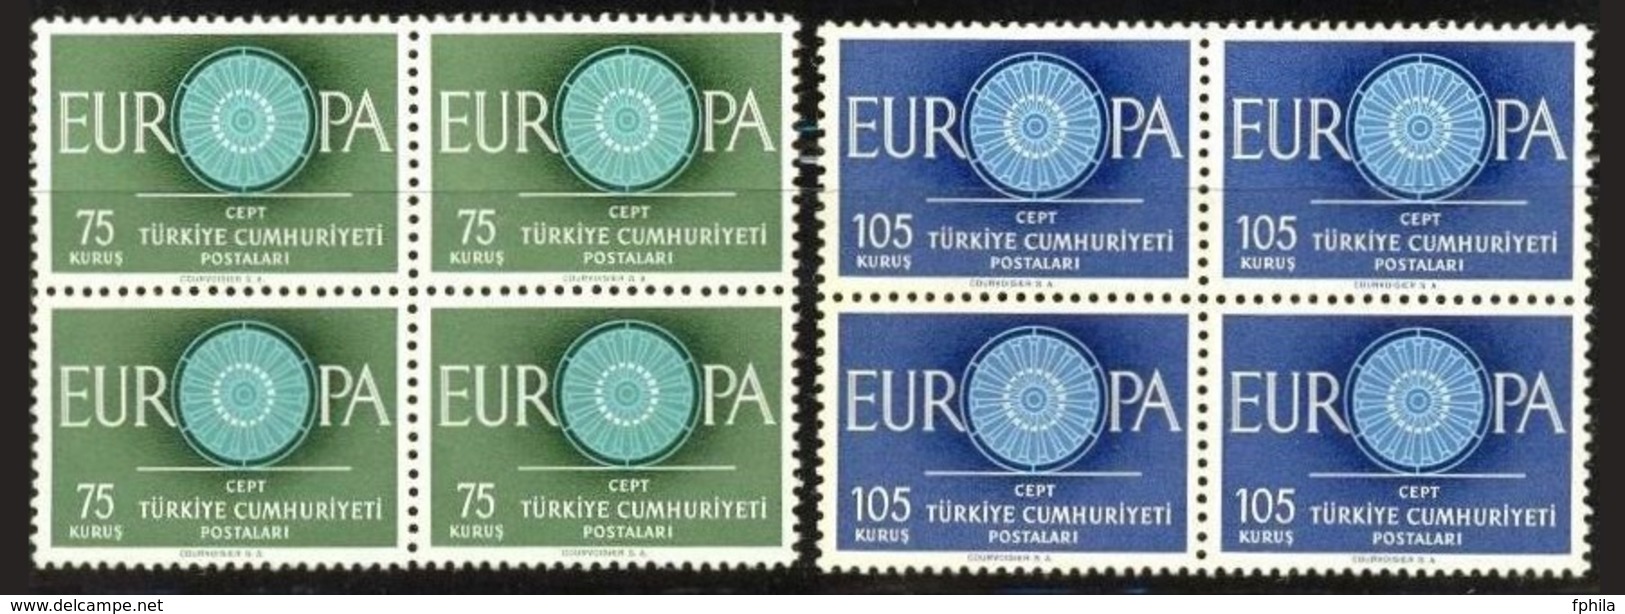 1960 TURKEY EUROPA CEPT BLOCK OF 4 MNH ** - 1960